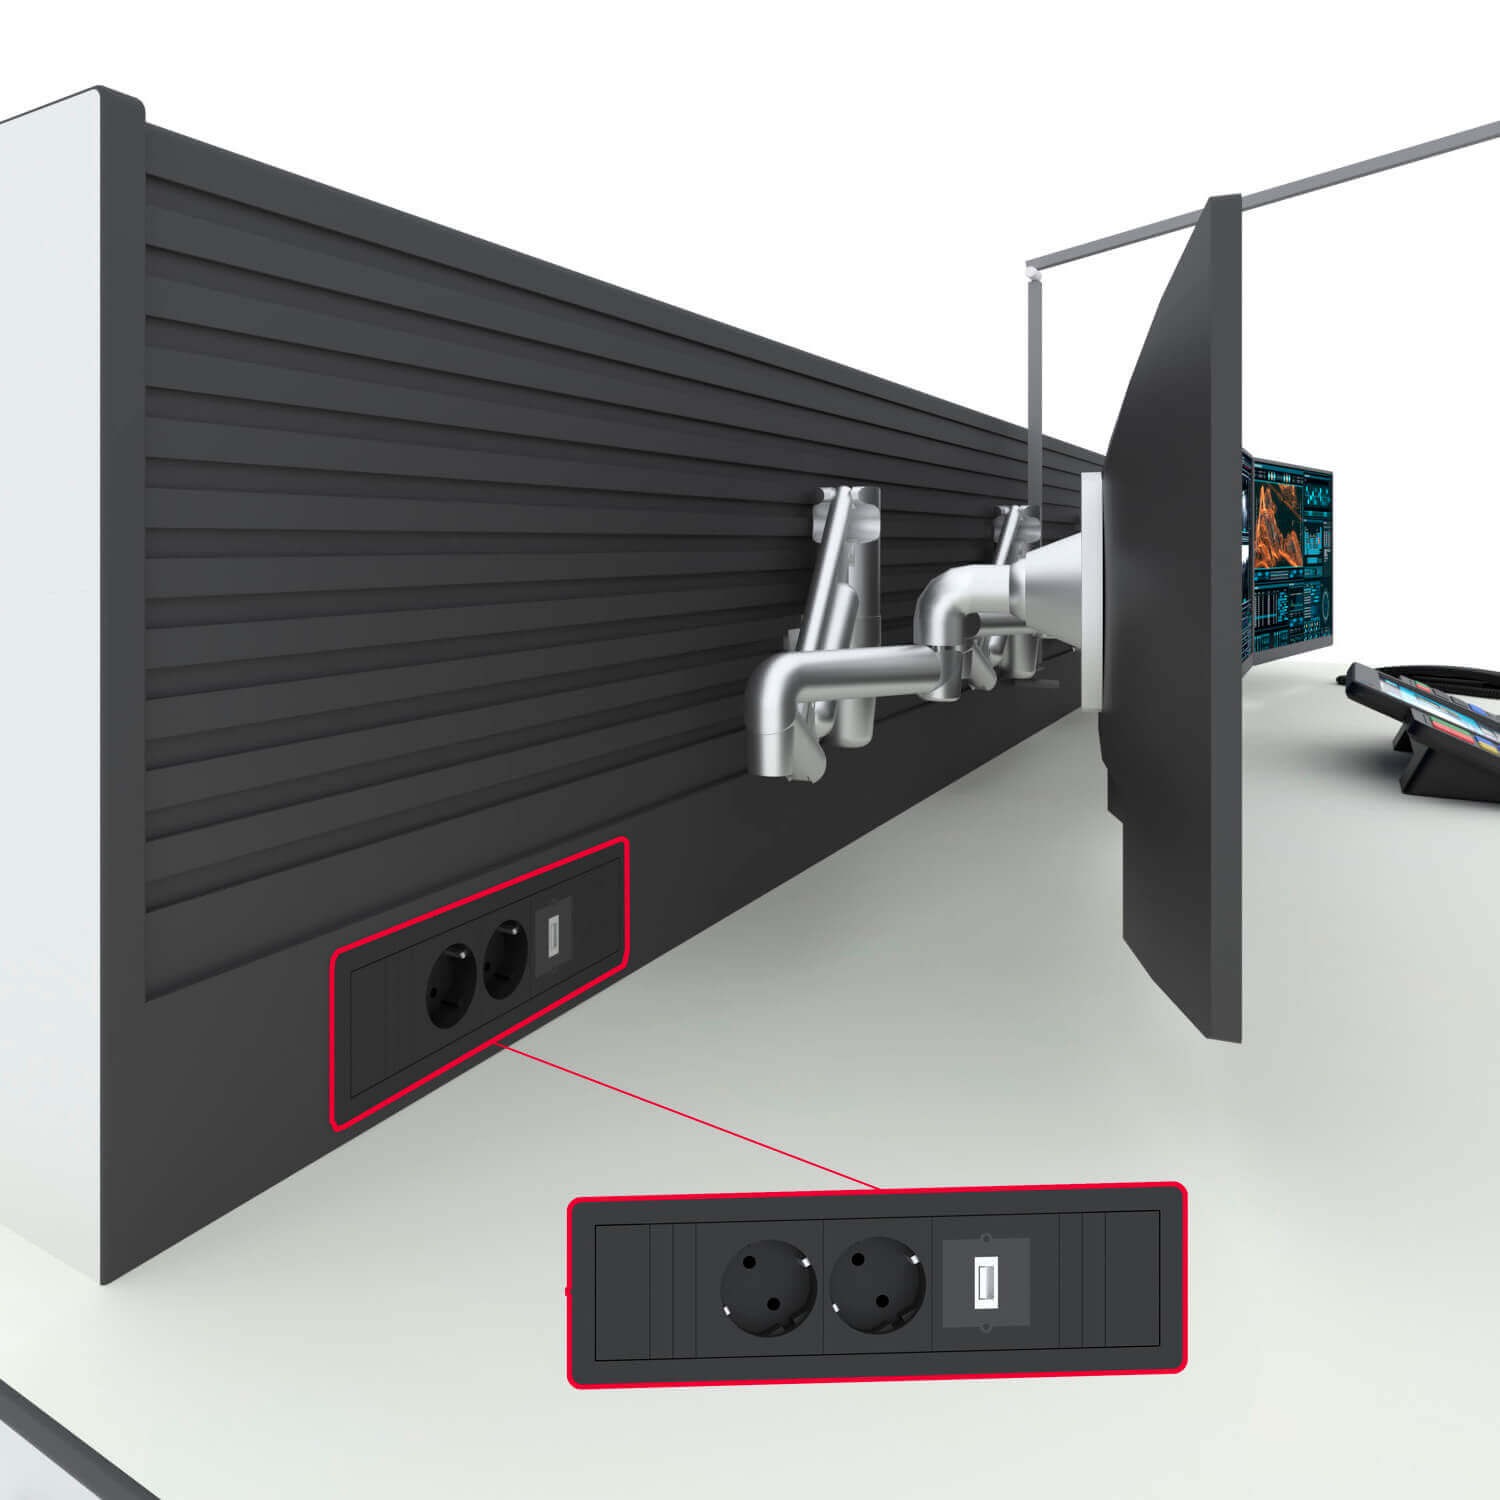 Технологическая мебель Атлант ФОРТ с крепежной панелью SlatWall и мониторами с аксессуарами